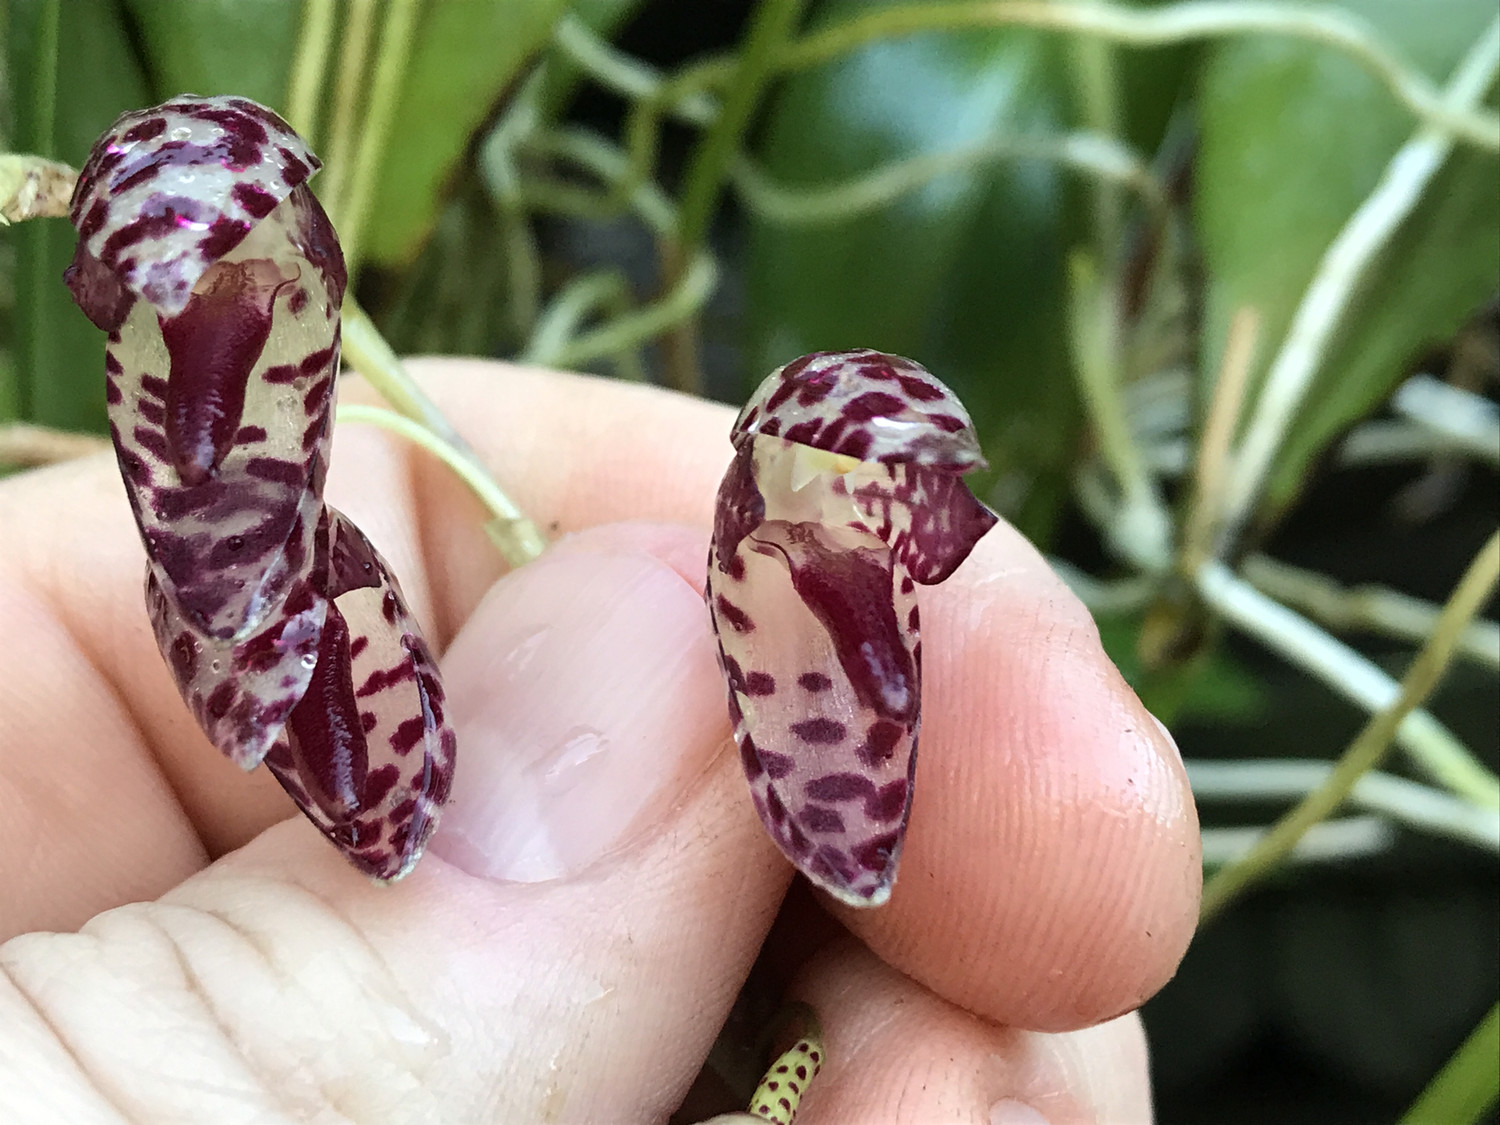 Pleurothallis restrepioides “Dragon Stone” Orchid